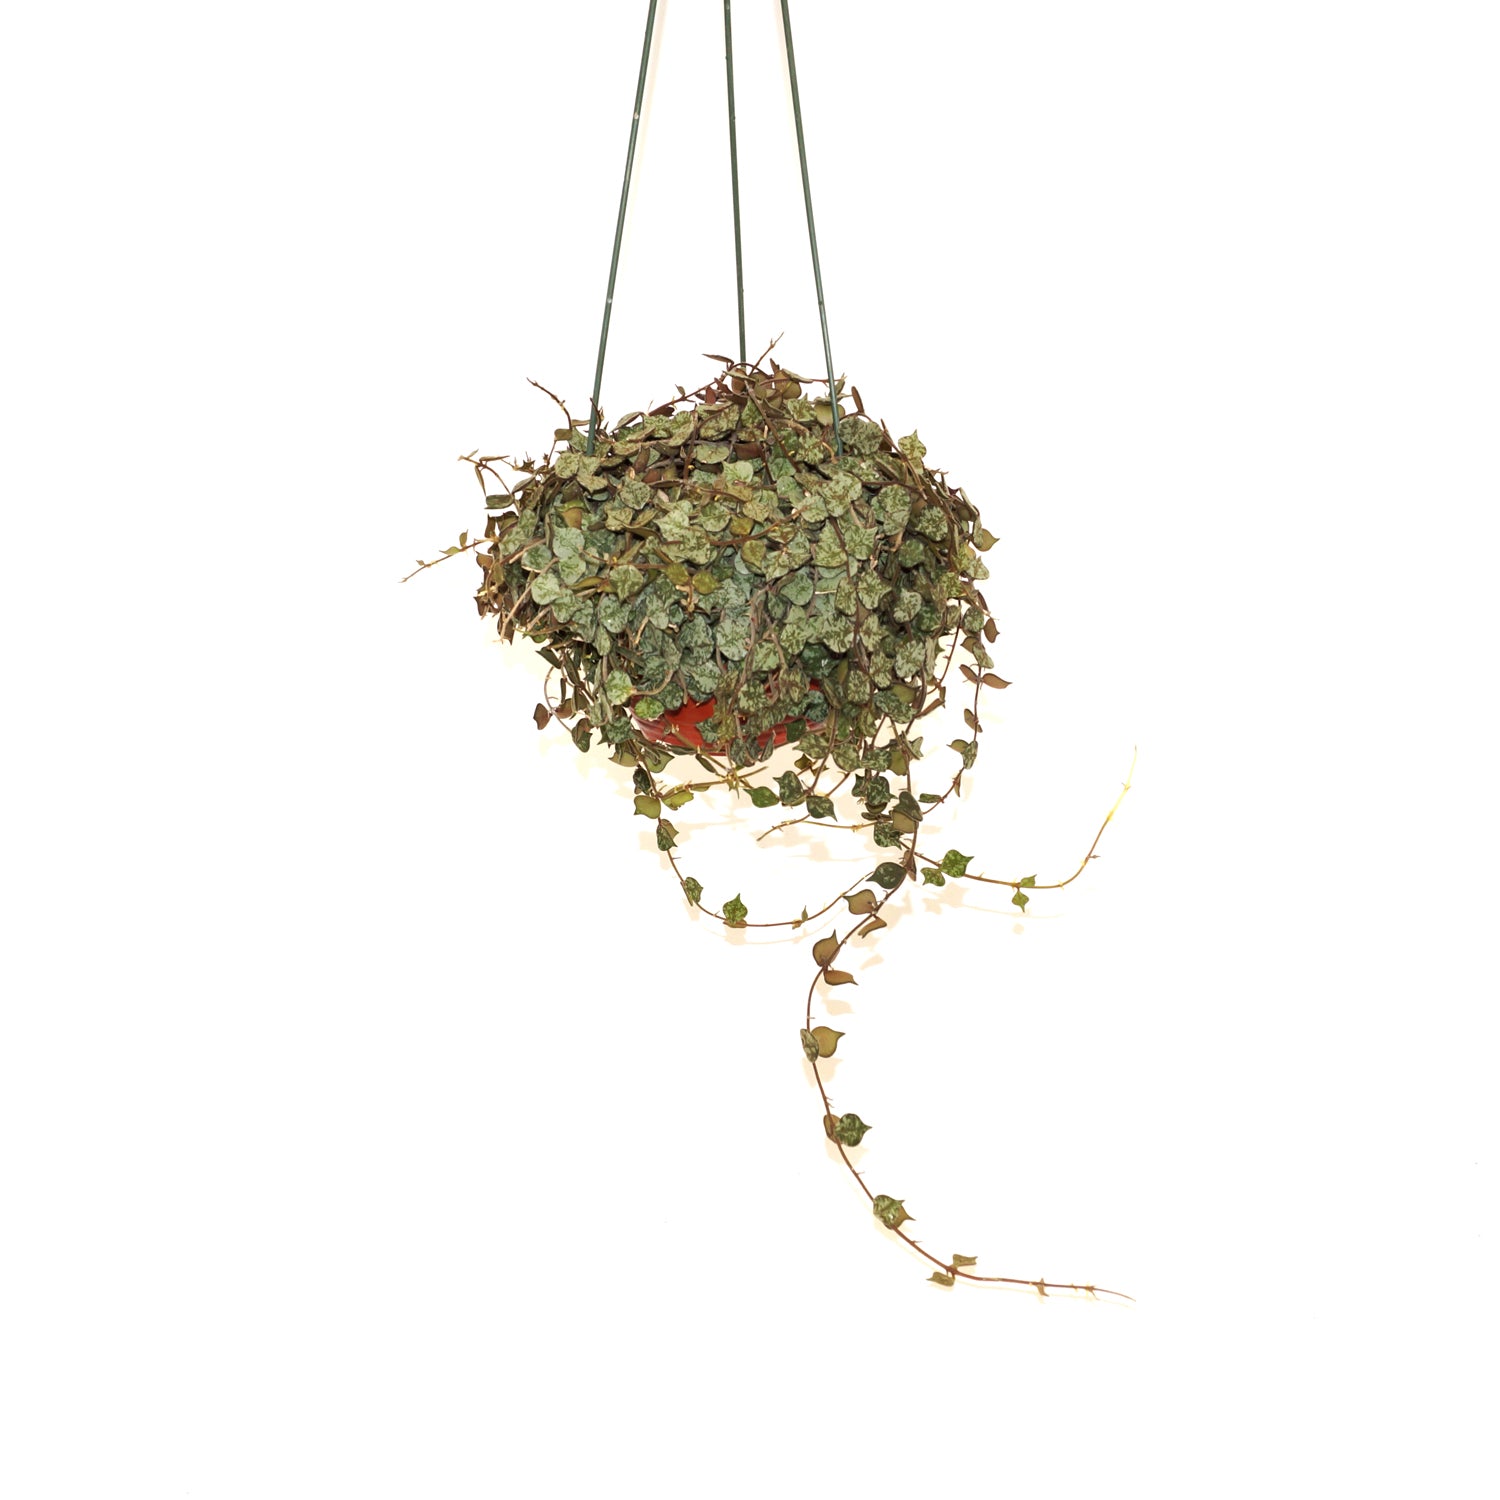 Hoya curtisii - 6" Hanging Basket